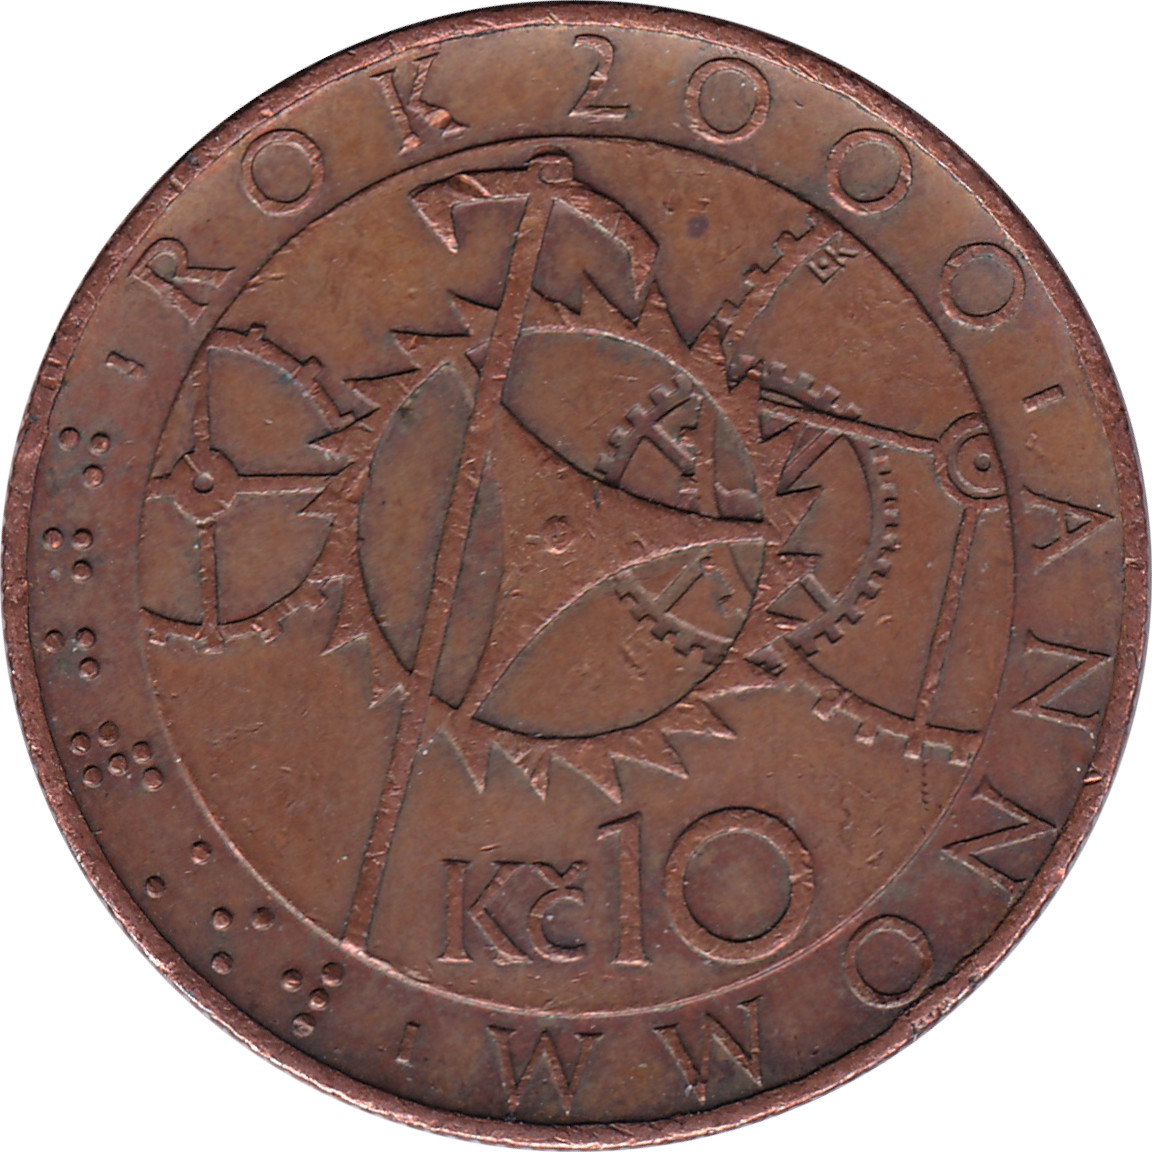 10 korun - Year 2000